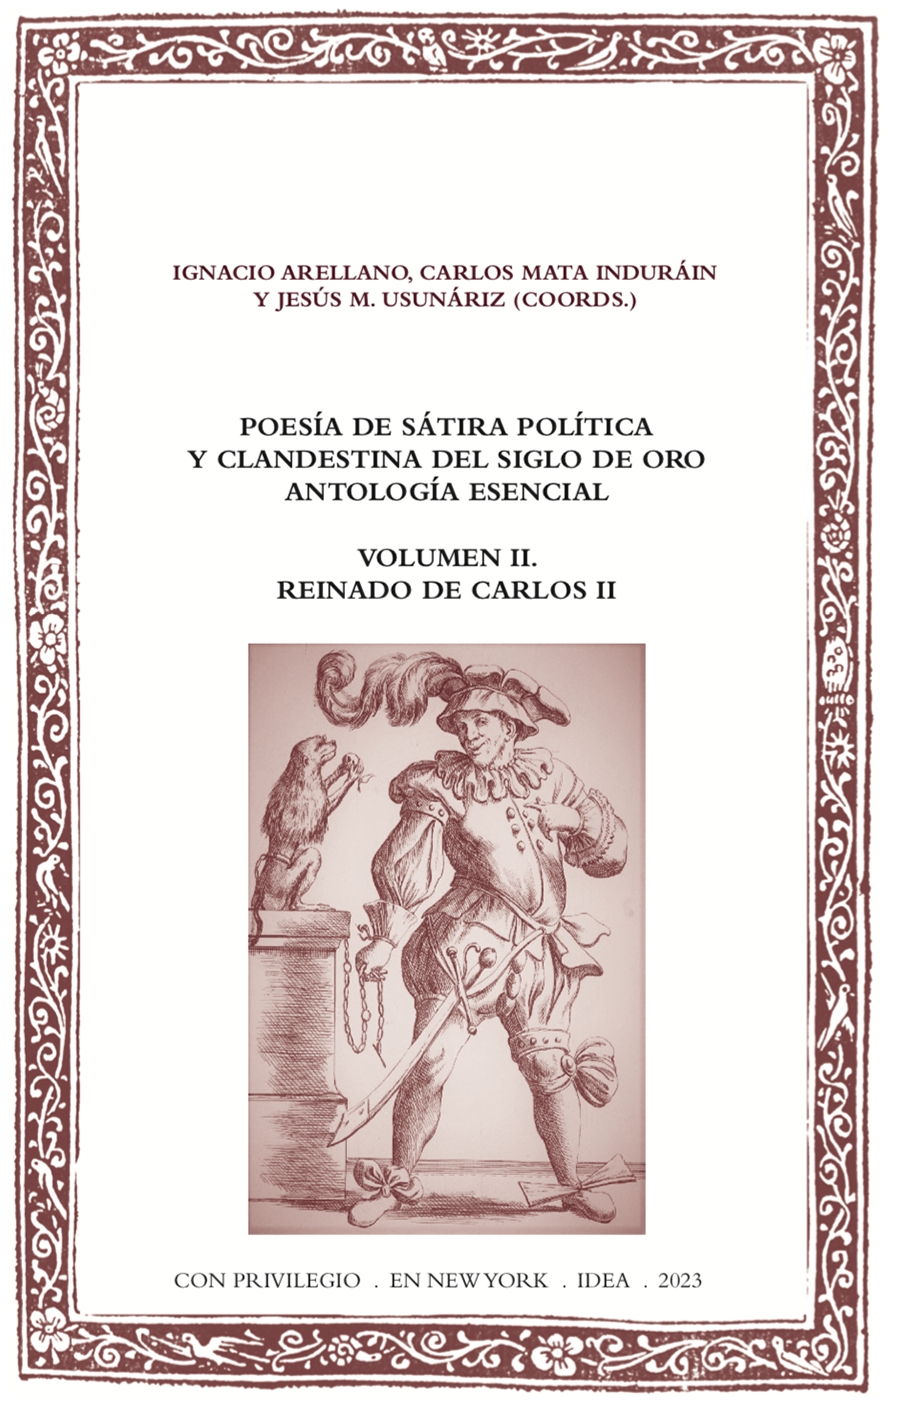 Poesía de sátira política y clandestina del Siglo de Oro. Antología esencial. Volumen II. Reinado de Carlos II